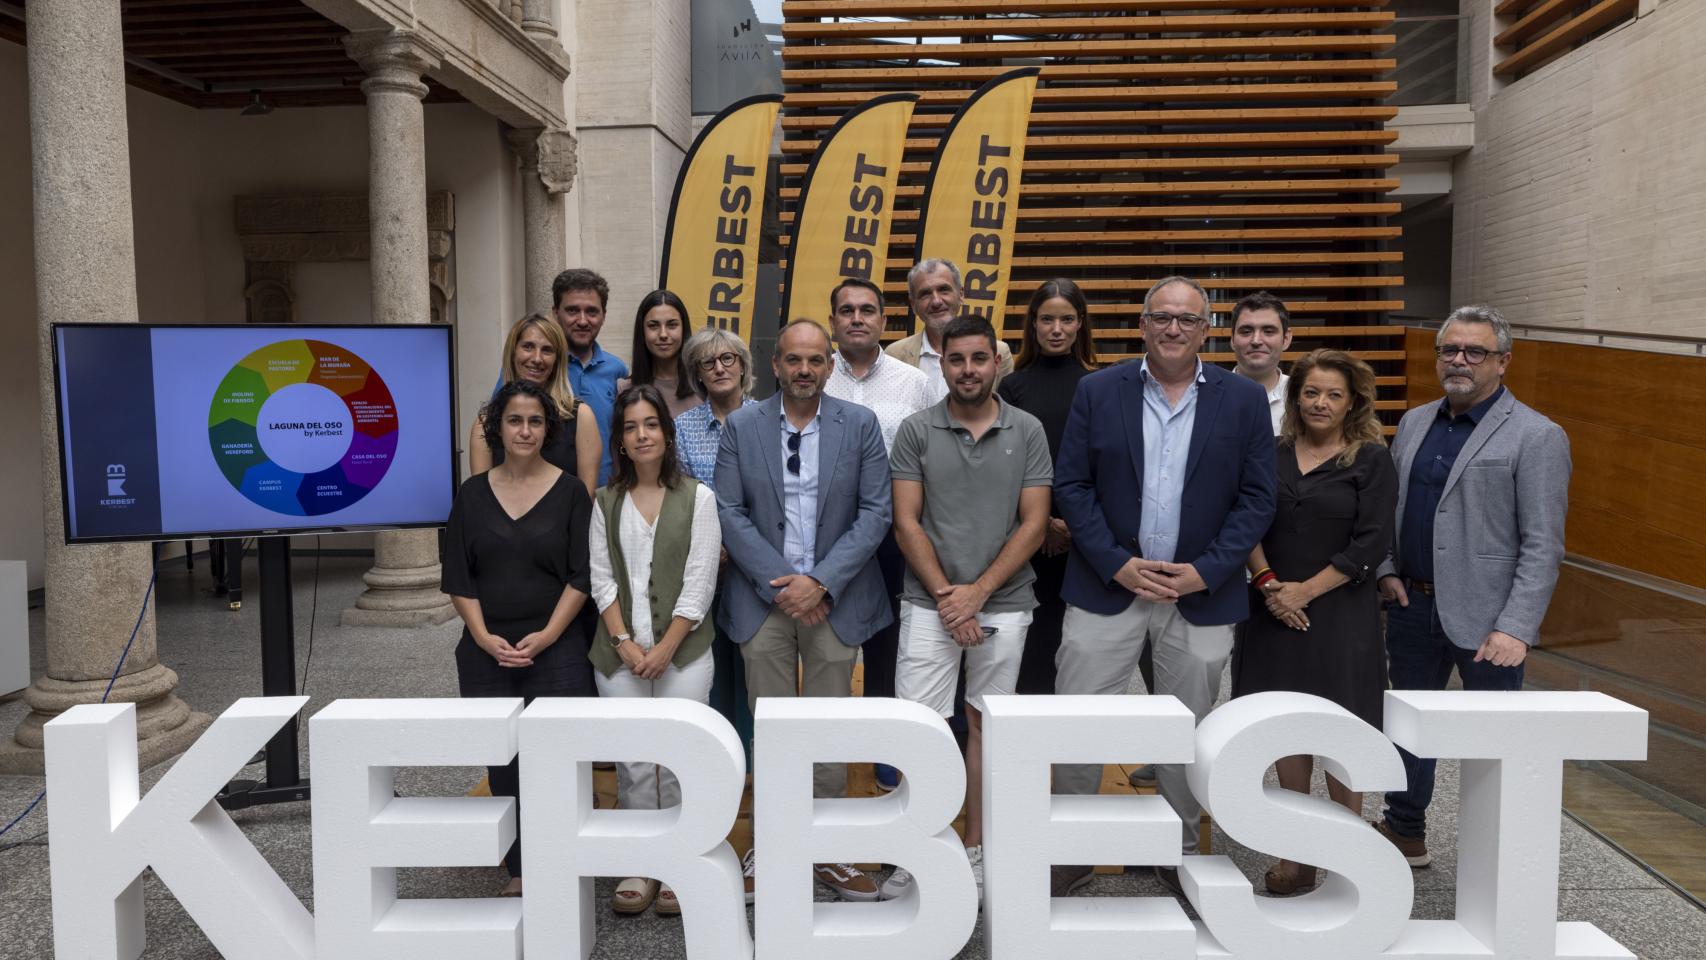 Kerbest invertirá diez millones en un centro temático de sostenibilidad en El Oso (Ávila)